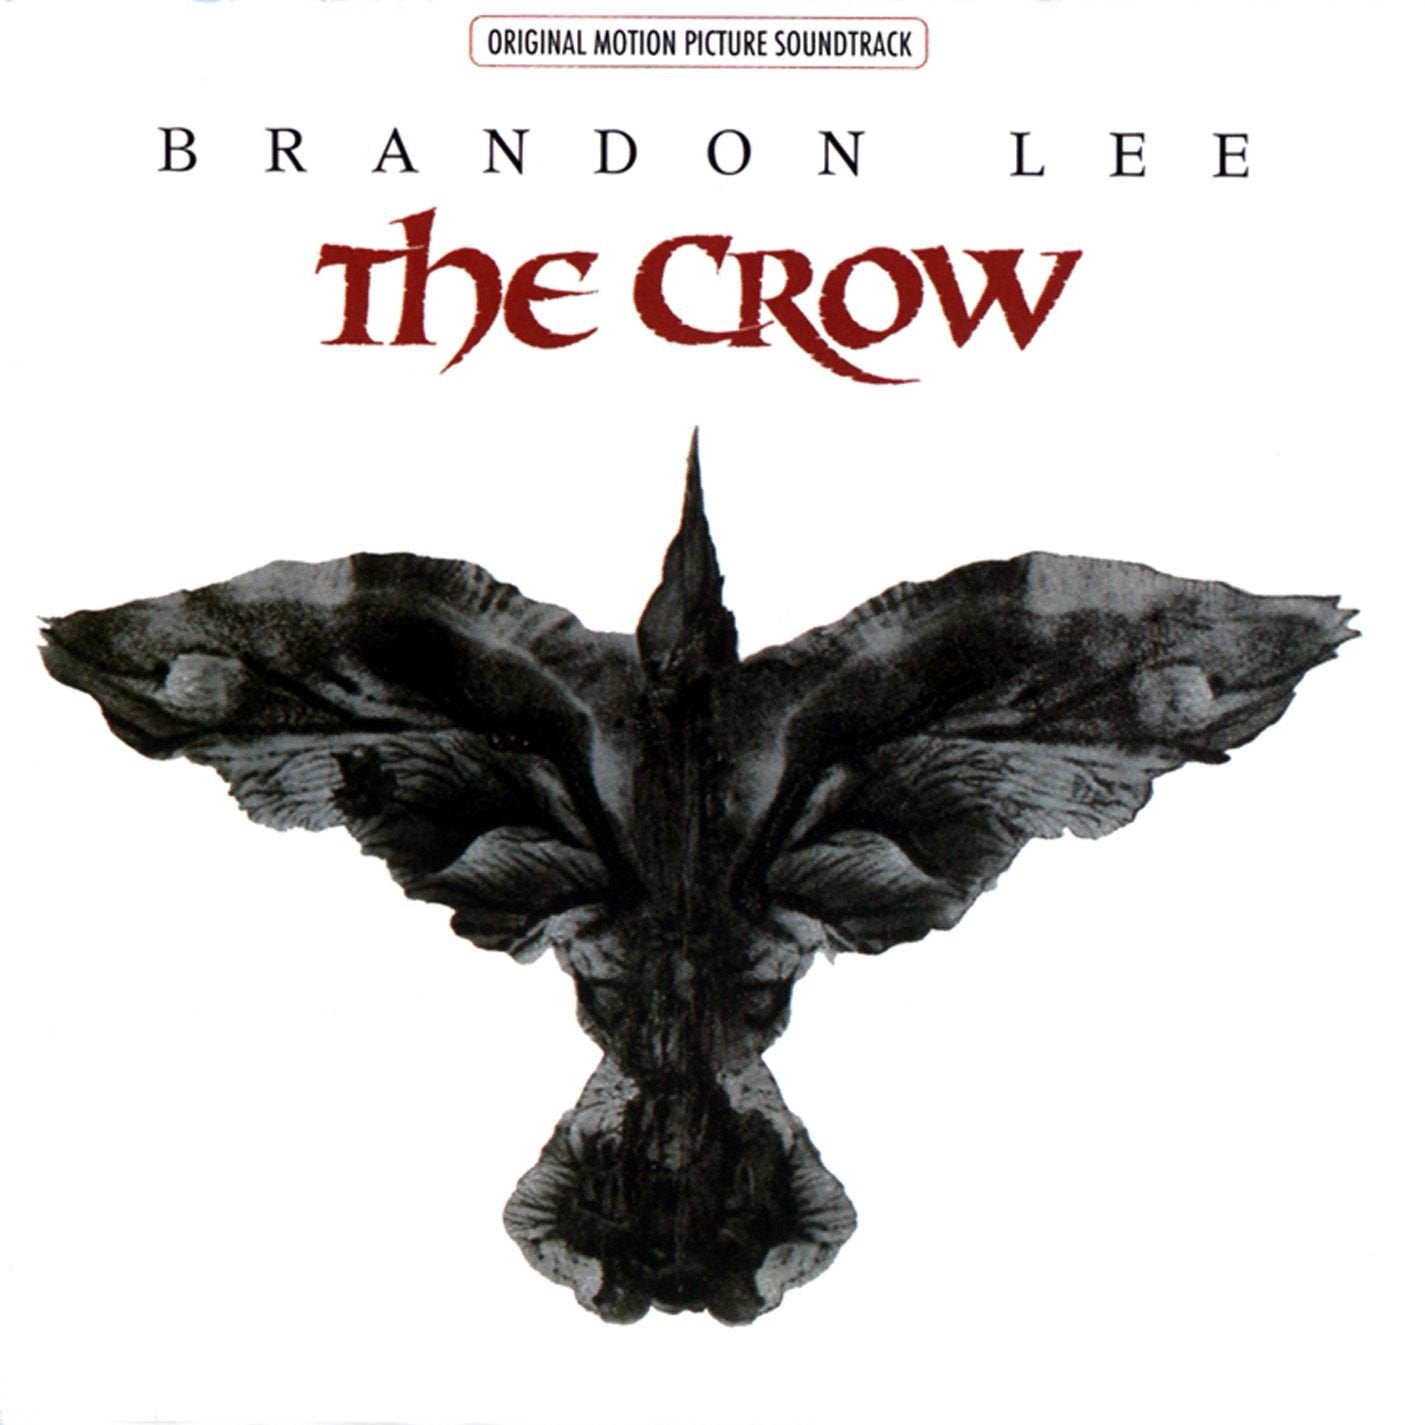 V/A - THE CROW Original Motion Picture Soundtrack Vinyl 2xLP